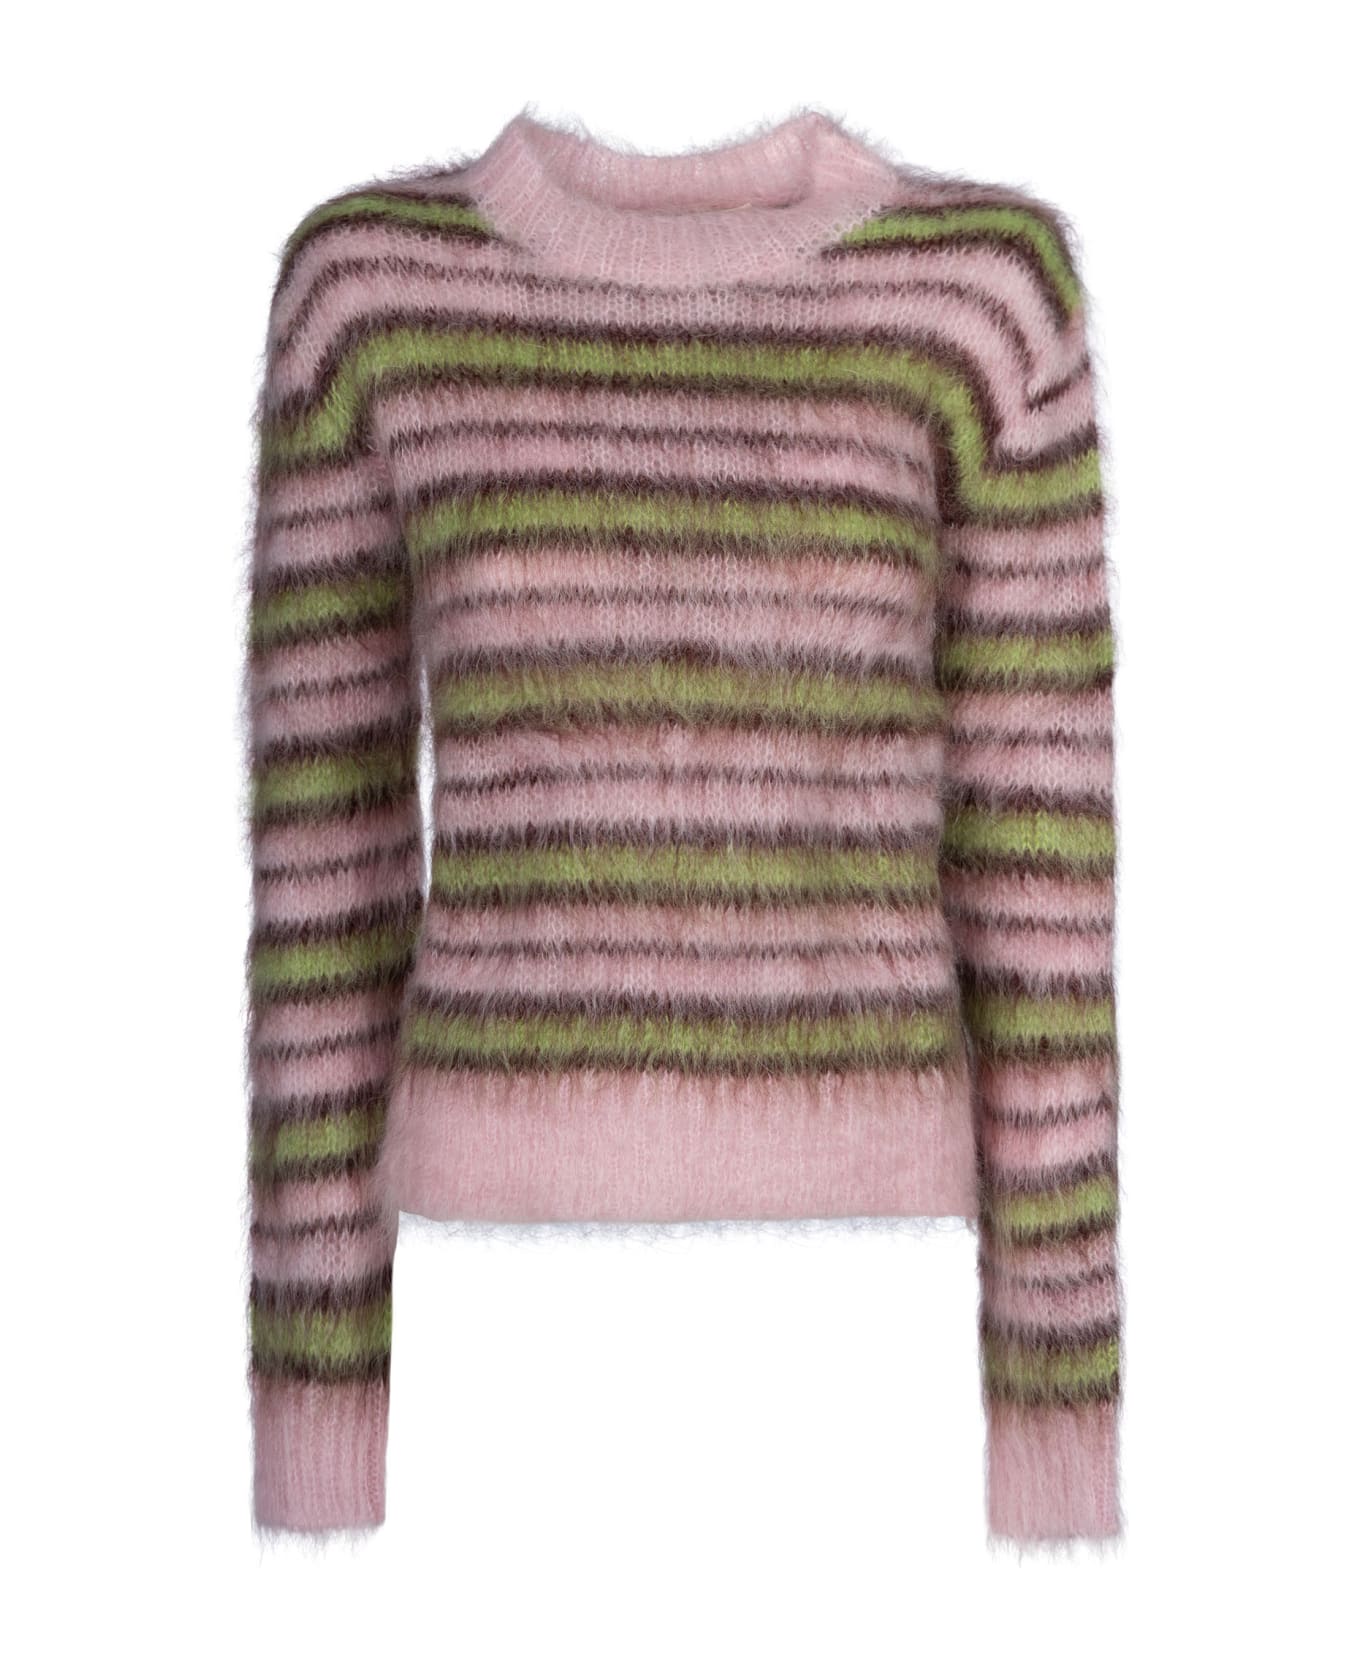 Marni Iconic Brushed Stripes Sweater - Quartz